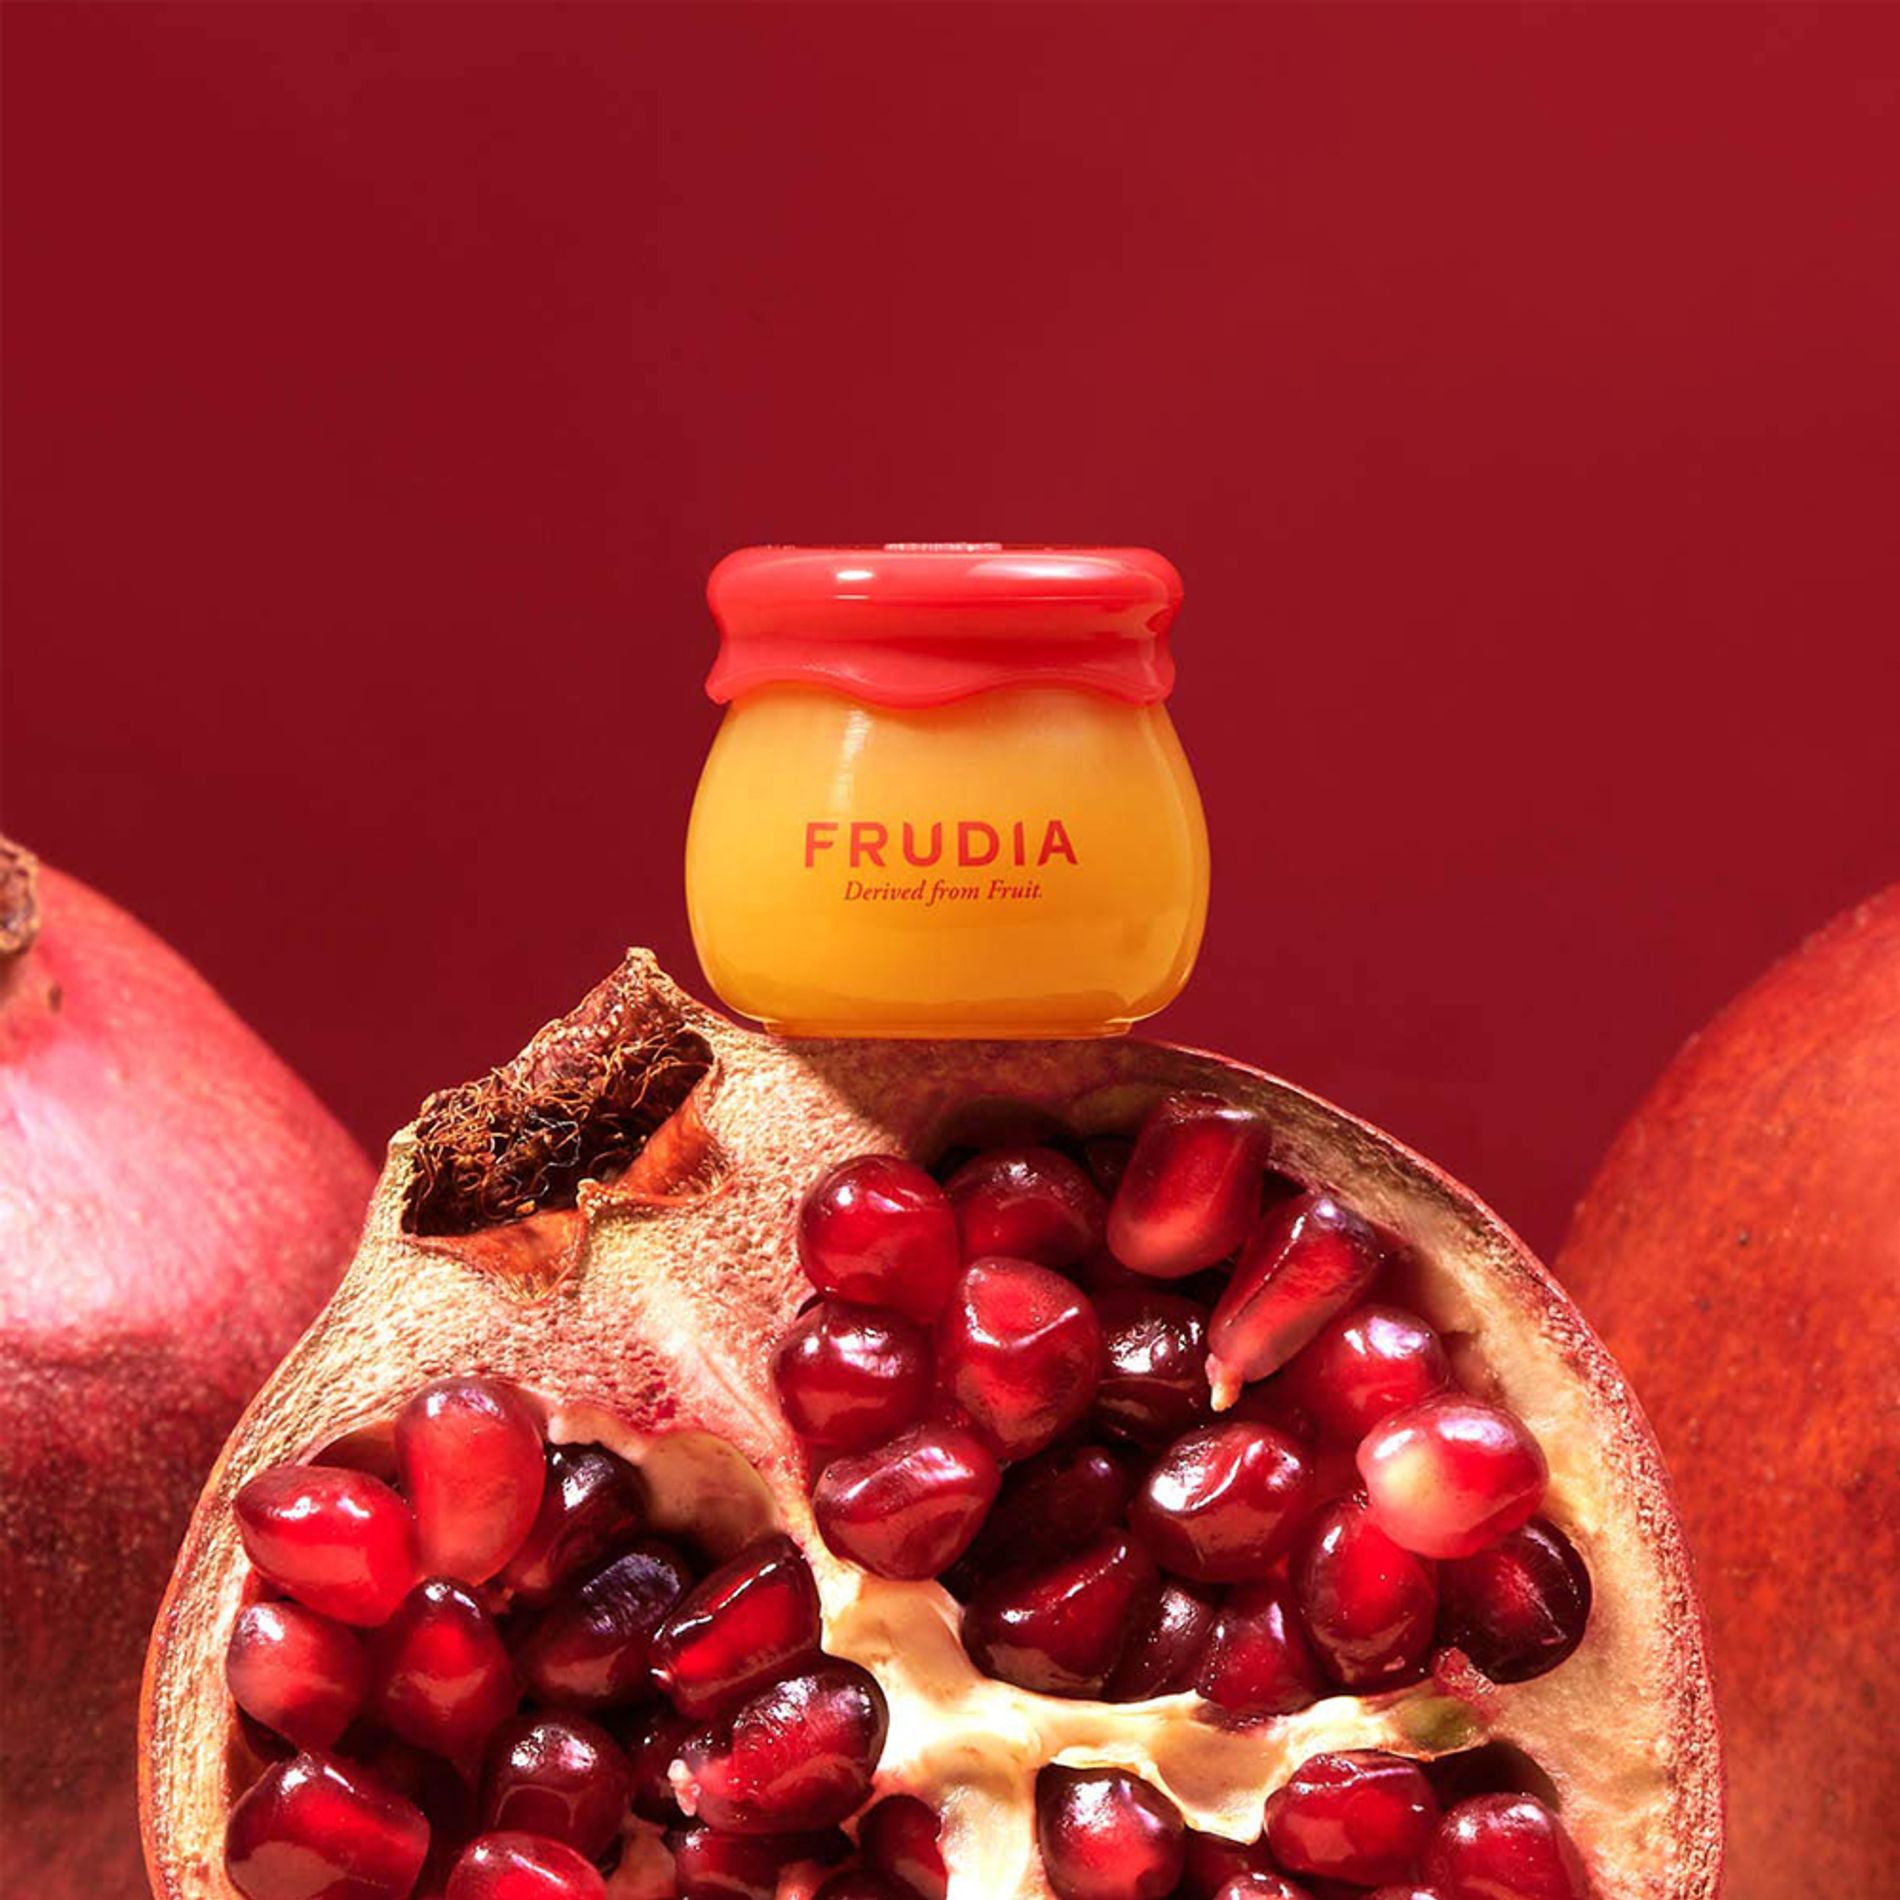 duong-am-moi-mat-ong-thach-luu-frudia-pomegranate-honey-3-in-1-lip-balm-10ml-3